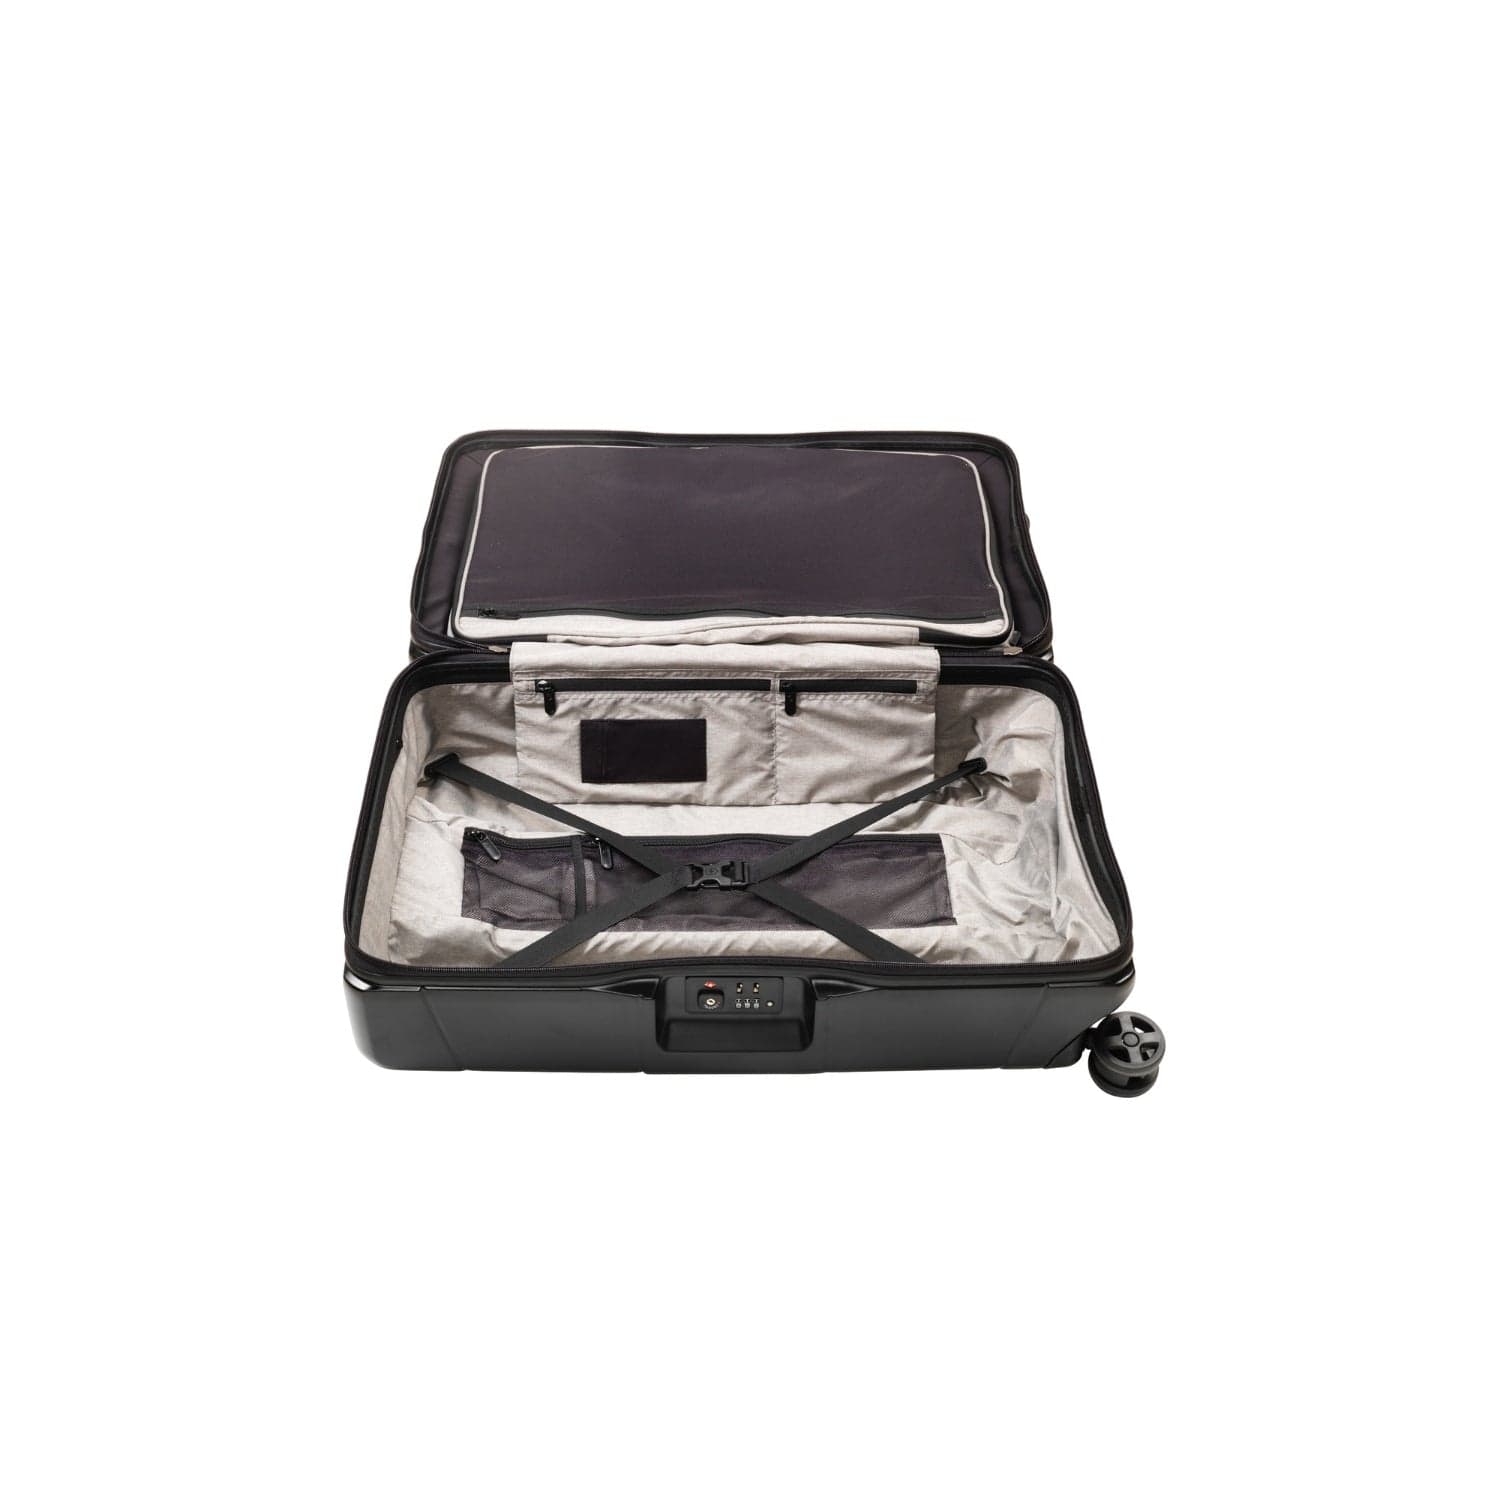 فيكتورينو ليكسيكون 68 سم حقيبة صلبة متوسطة 4 عجلات مزدوجة تسجيل الوصول حقيبة ترولي - أسود - 602105